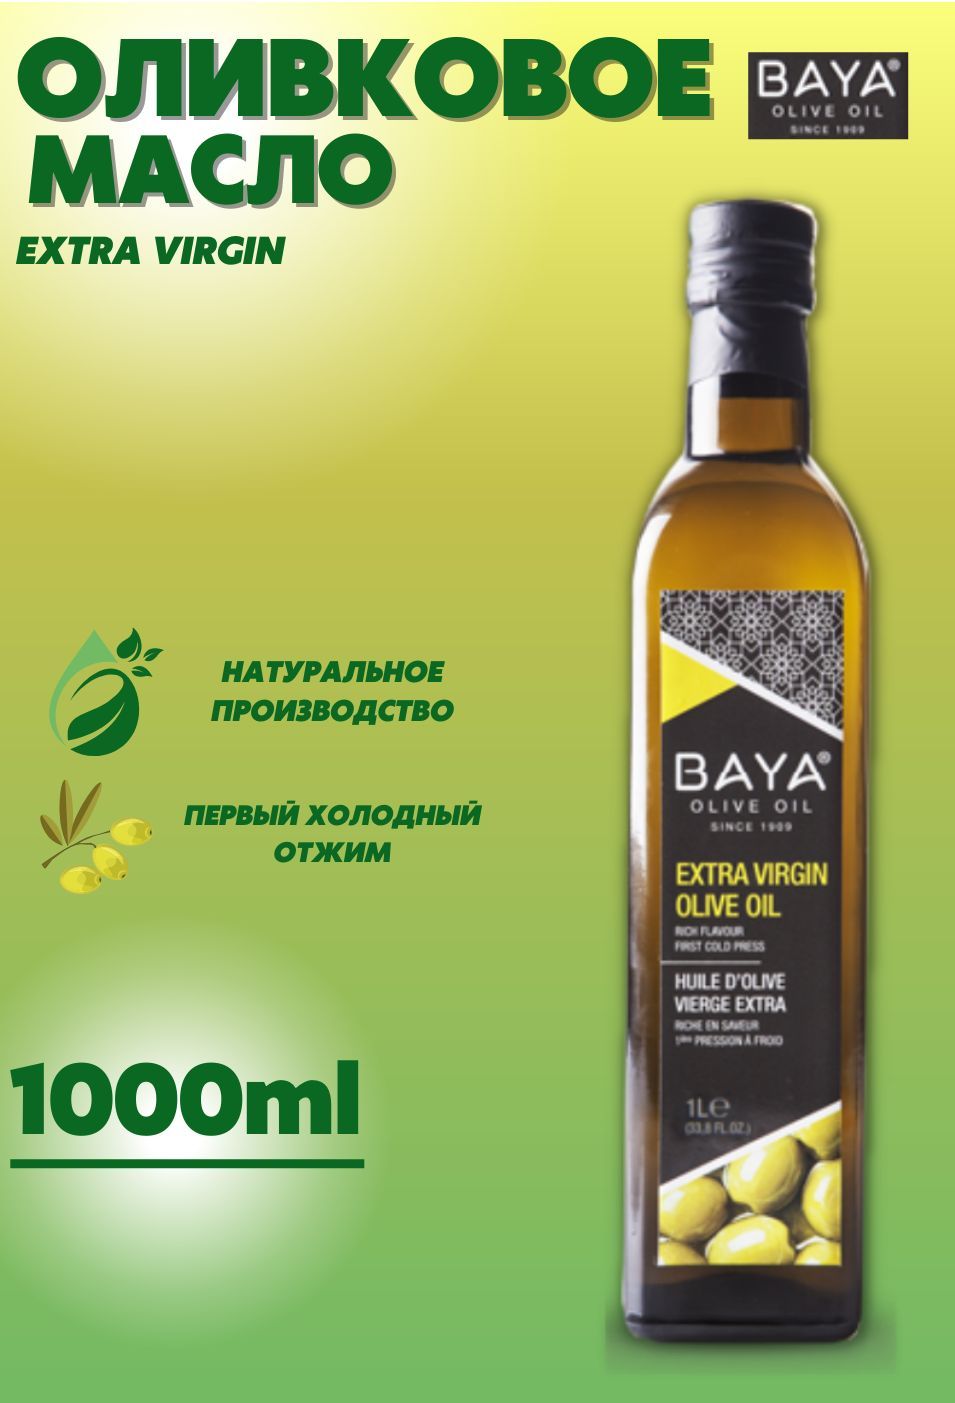 Baya масло оливковое. Baya масло оливковое нераф 500мл. Ferroli Extra Virgin масло оливковое. Масло оливковое Nigella Oil 1л Extra Virgin. Оливковое масло baya